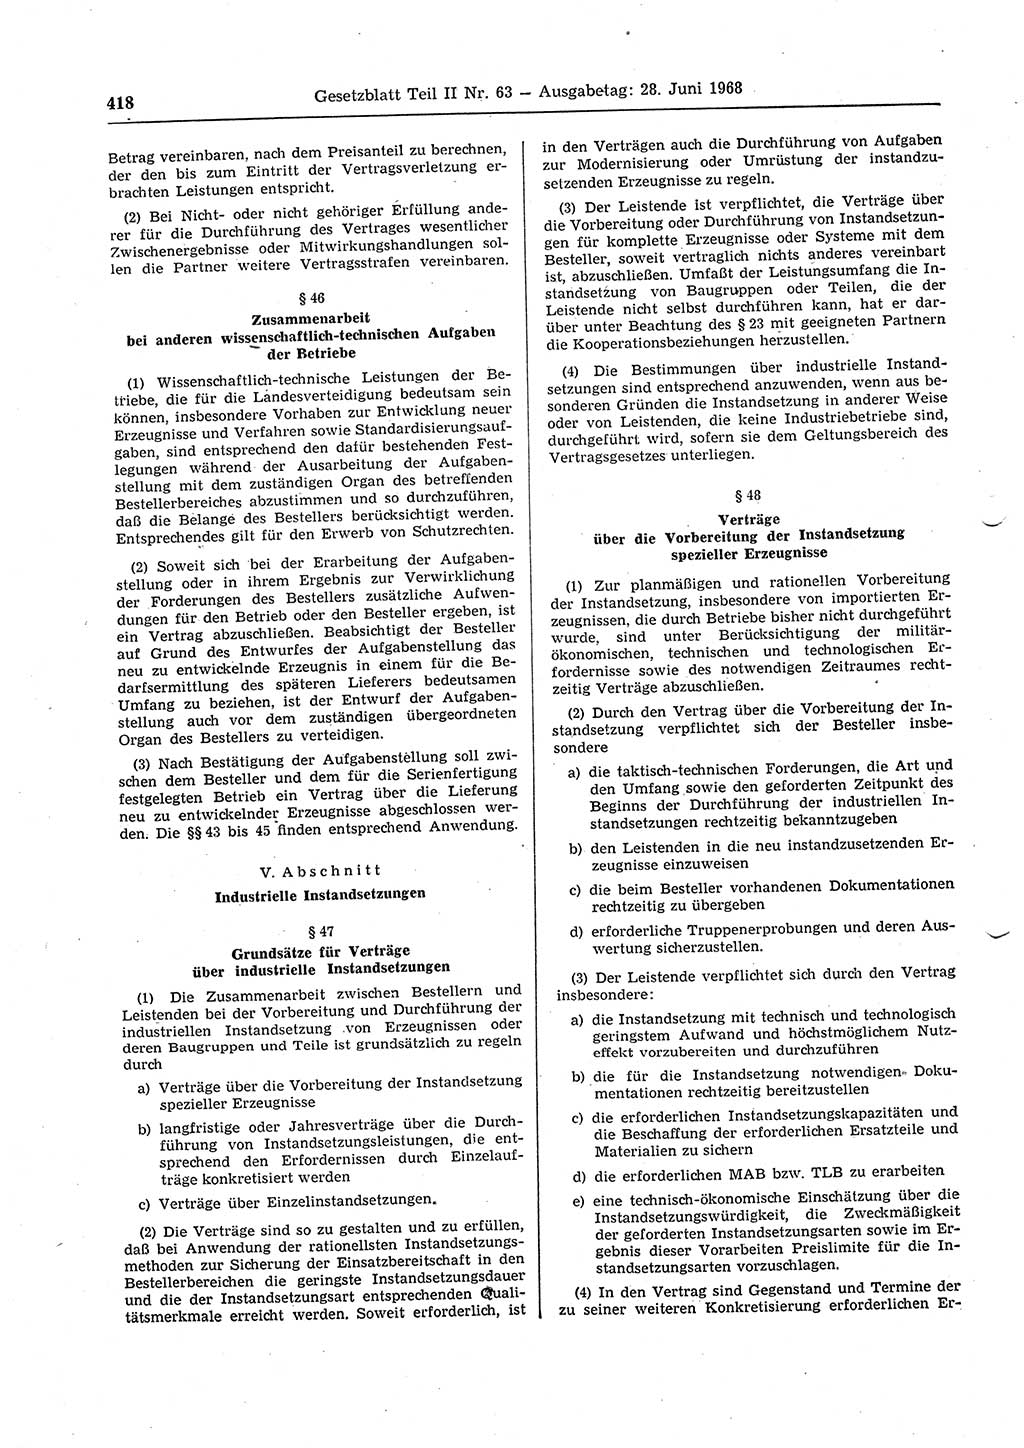 Gesetzblatt (GBl.) der Deutschen Demokratischen Republik (DDR) Teil ⅠⅠ 1968, Seite 418 (GBl. DDR ⅠⅠ 1968, S. 418)